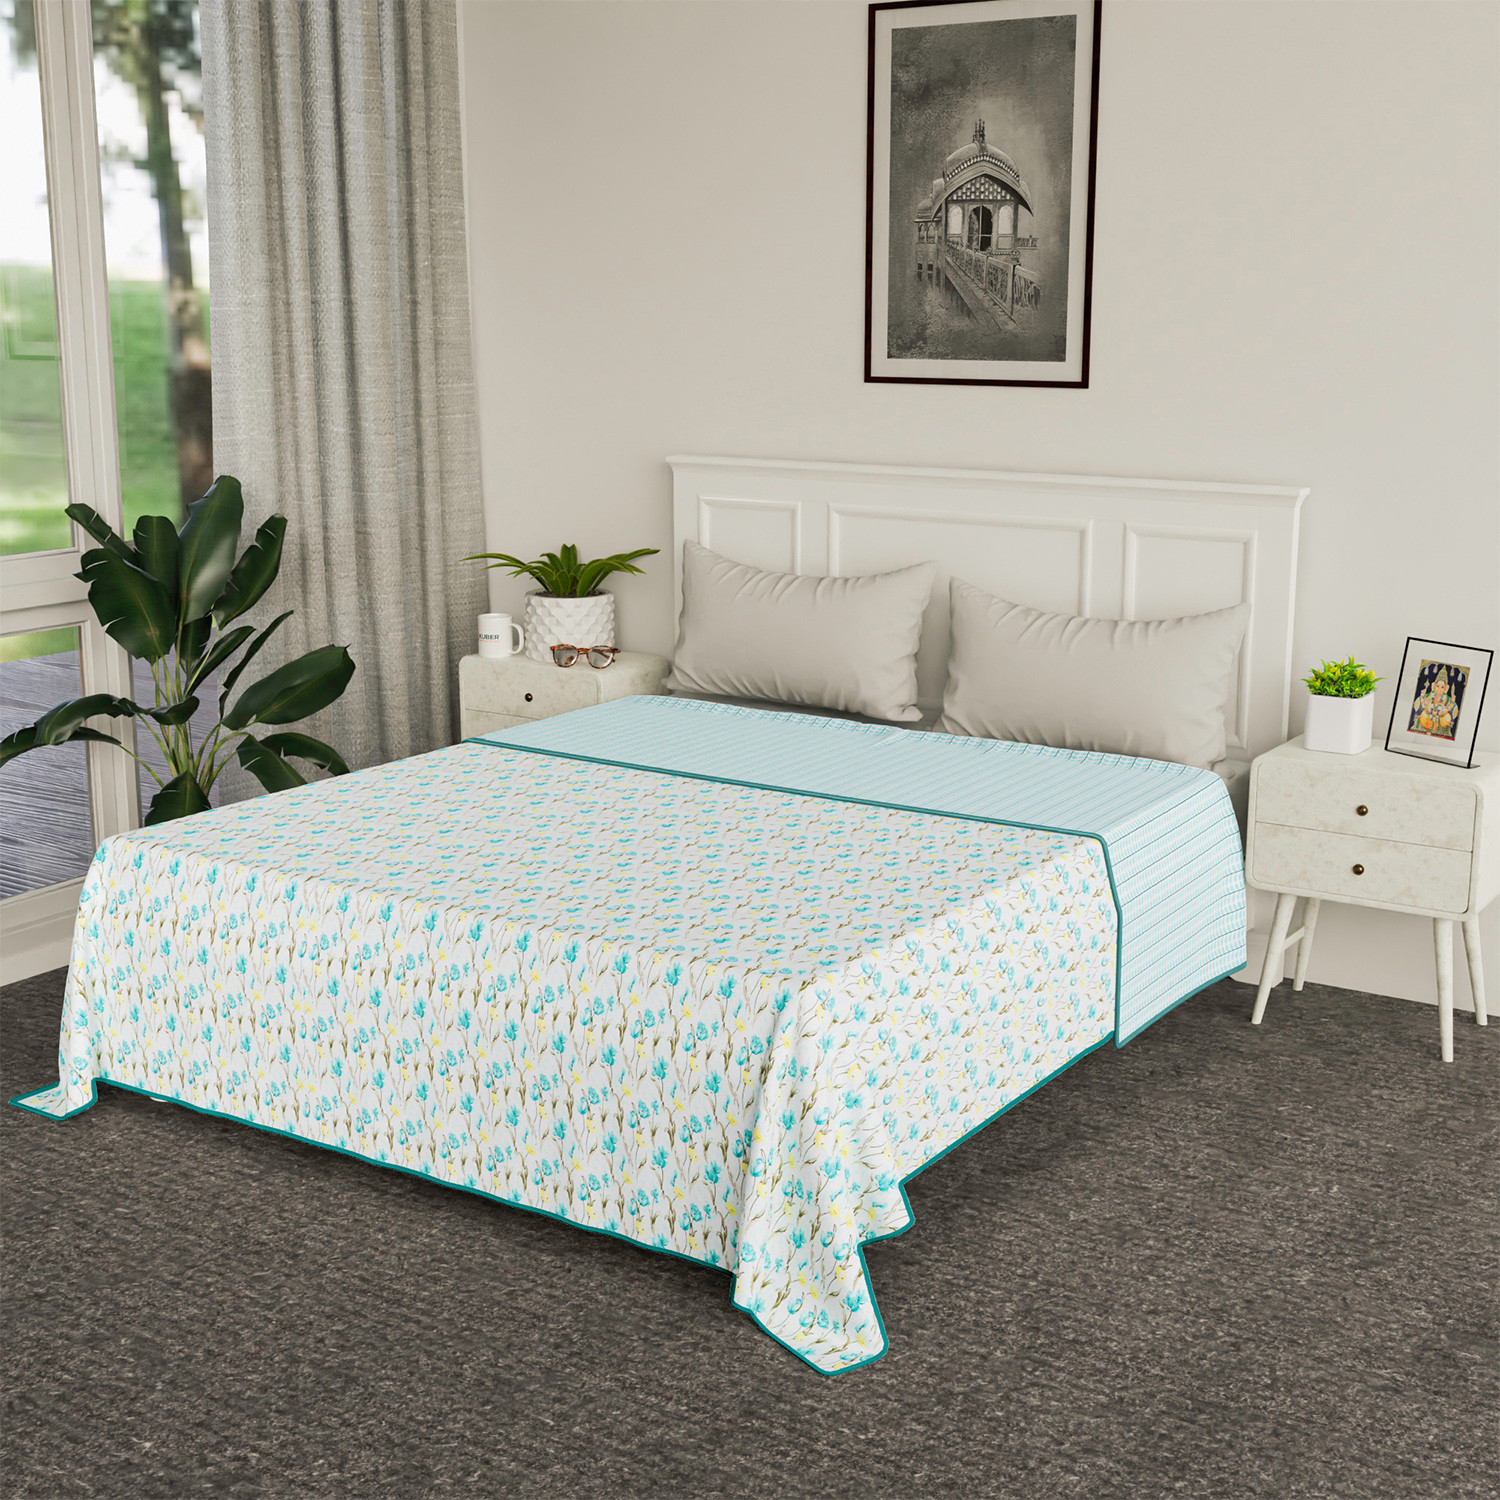 Kuber Industries Blanket | Cotton Double Bed Dohar | Blanket For Home | Reversible AC Blanket For Travelling | Blanket For Summer | Blanket For Winters | Blue Flower | White